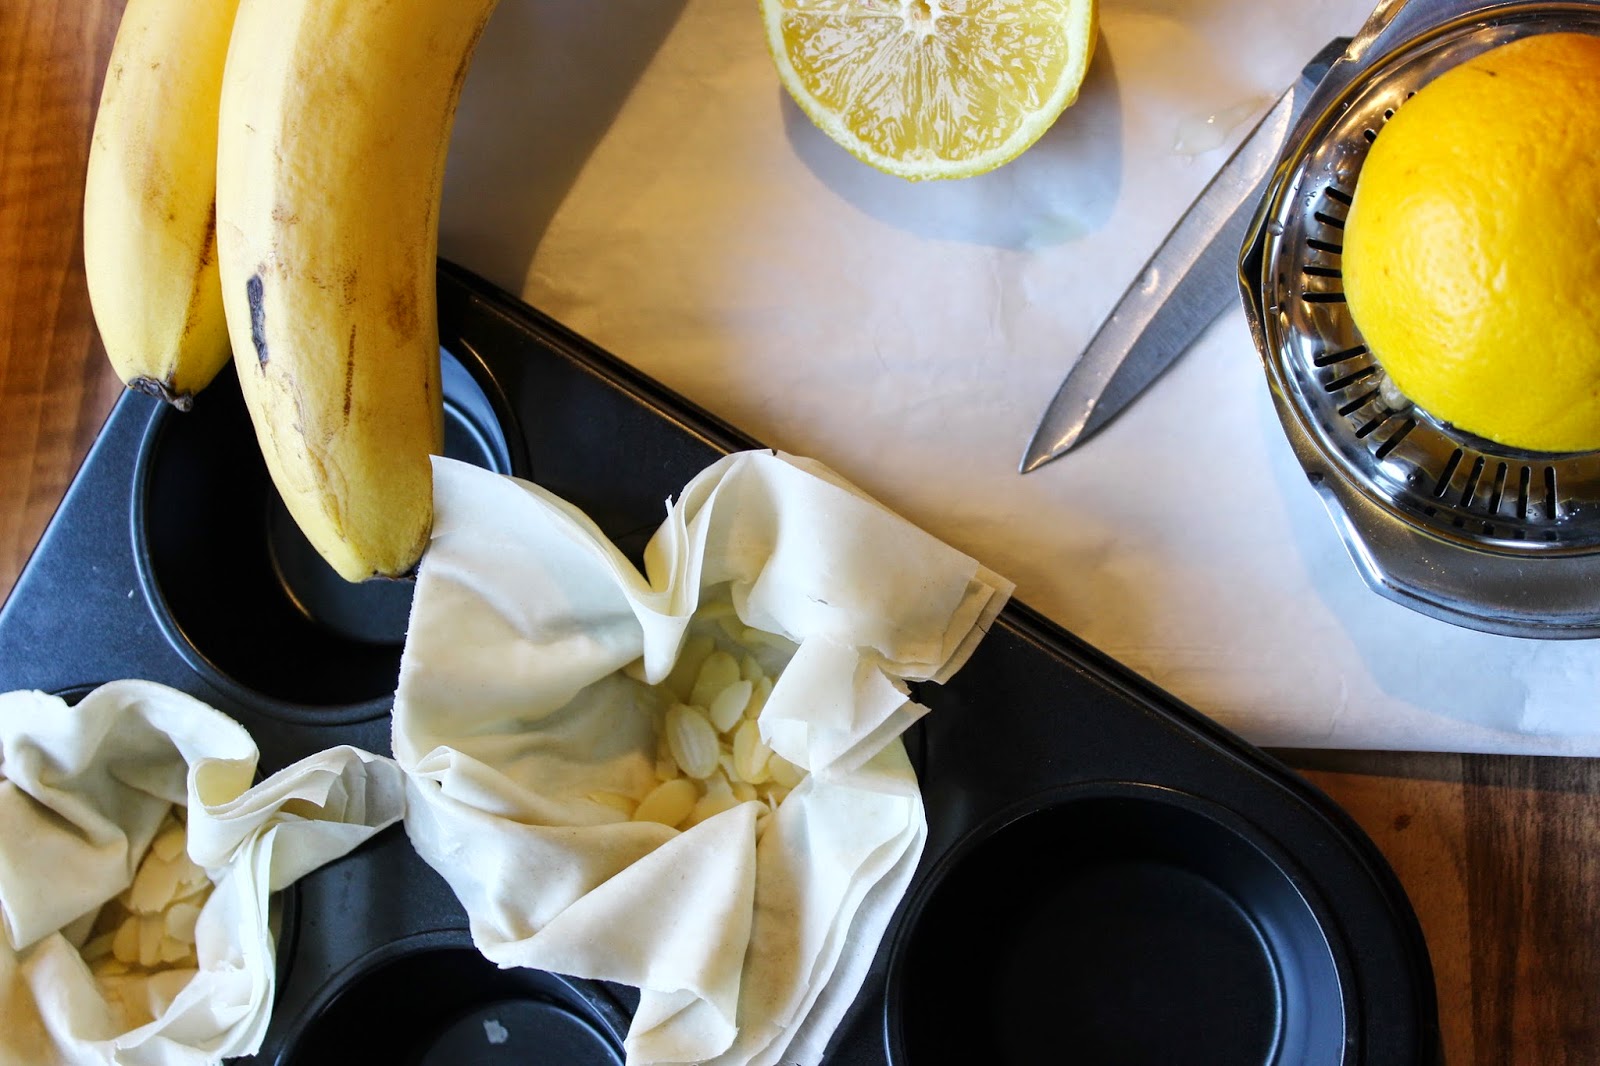 elkes klitzekleine welt: eine süße versuchung - karamellisierte bananen ...